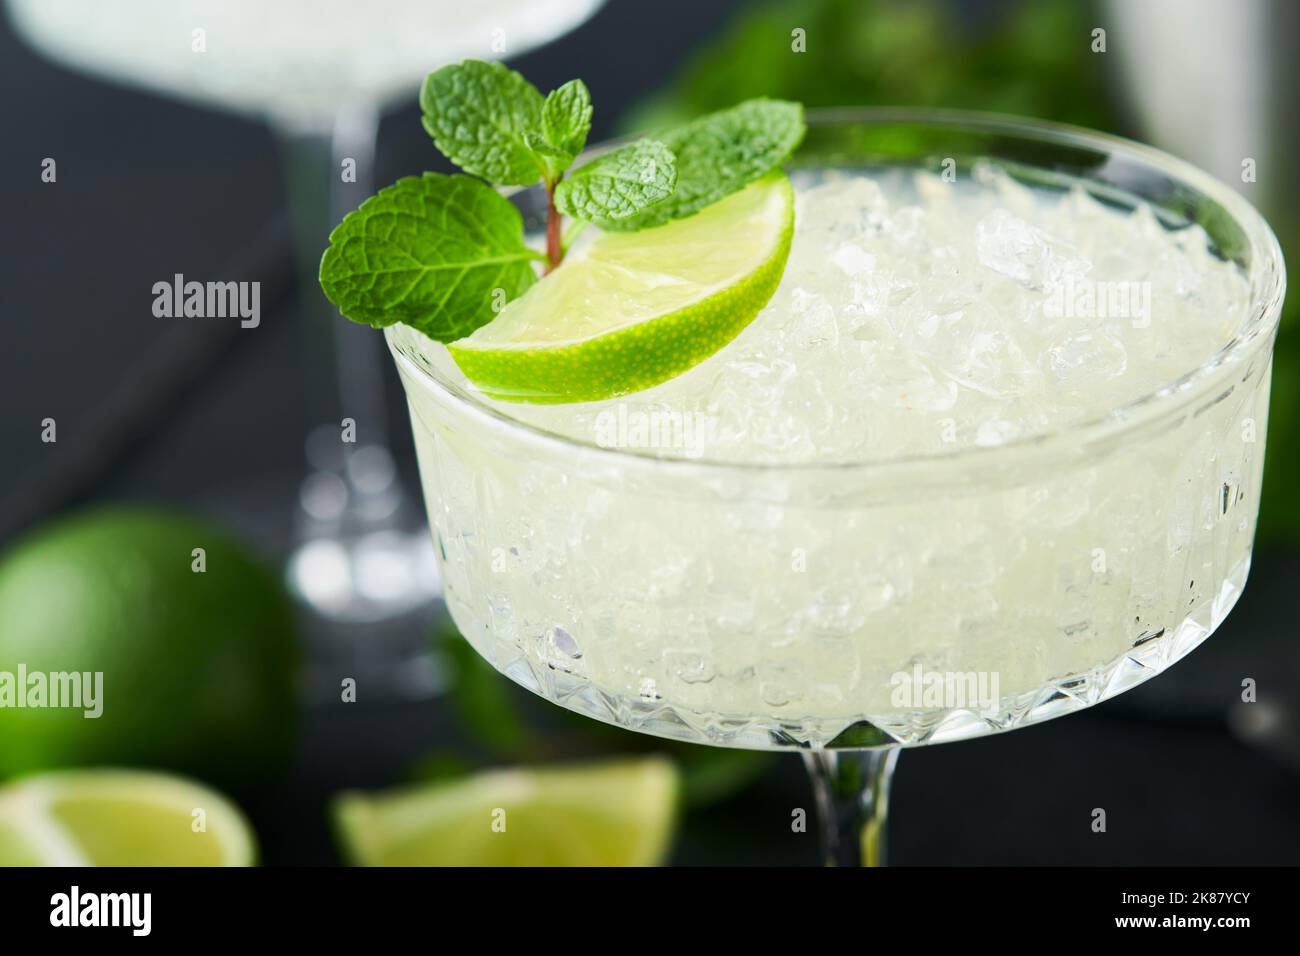 Margarita Cocktail mit Limette, Tequila, Minze und Eis auf dunklem Tisch mit erstaunlicher Hintergrundbeleuchtung, Kopierraum. Klassischer Margarita- oder Daiquiry-Cocktail. Barkarte Stockfoto